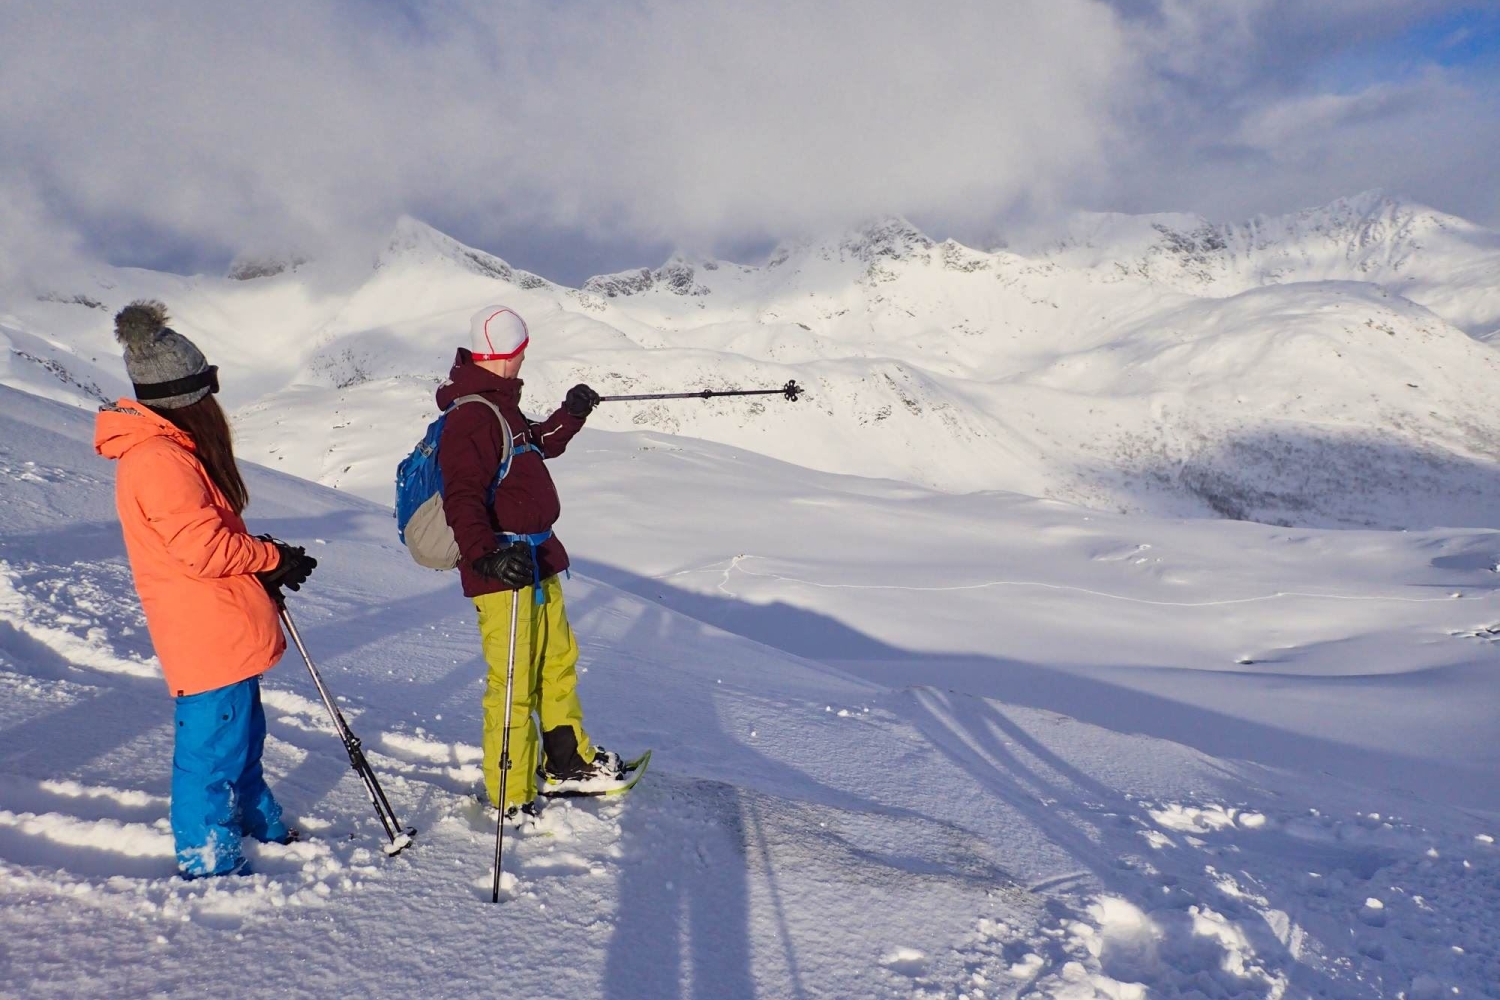 Scenic snowshoe trip over Tromsø